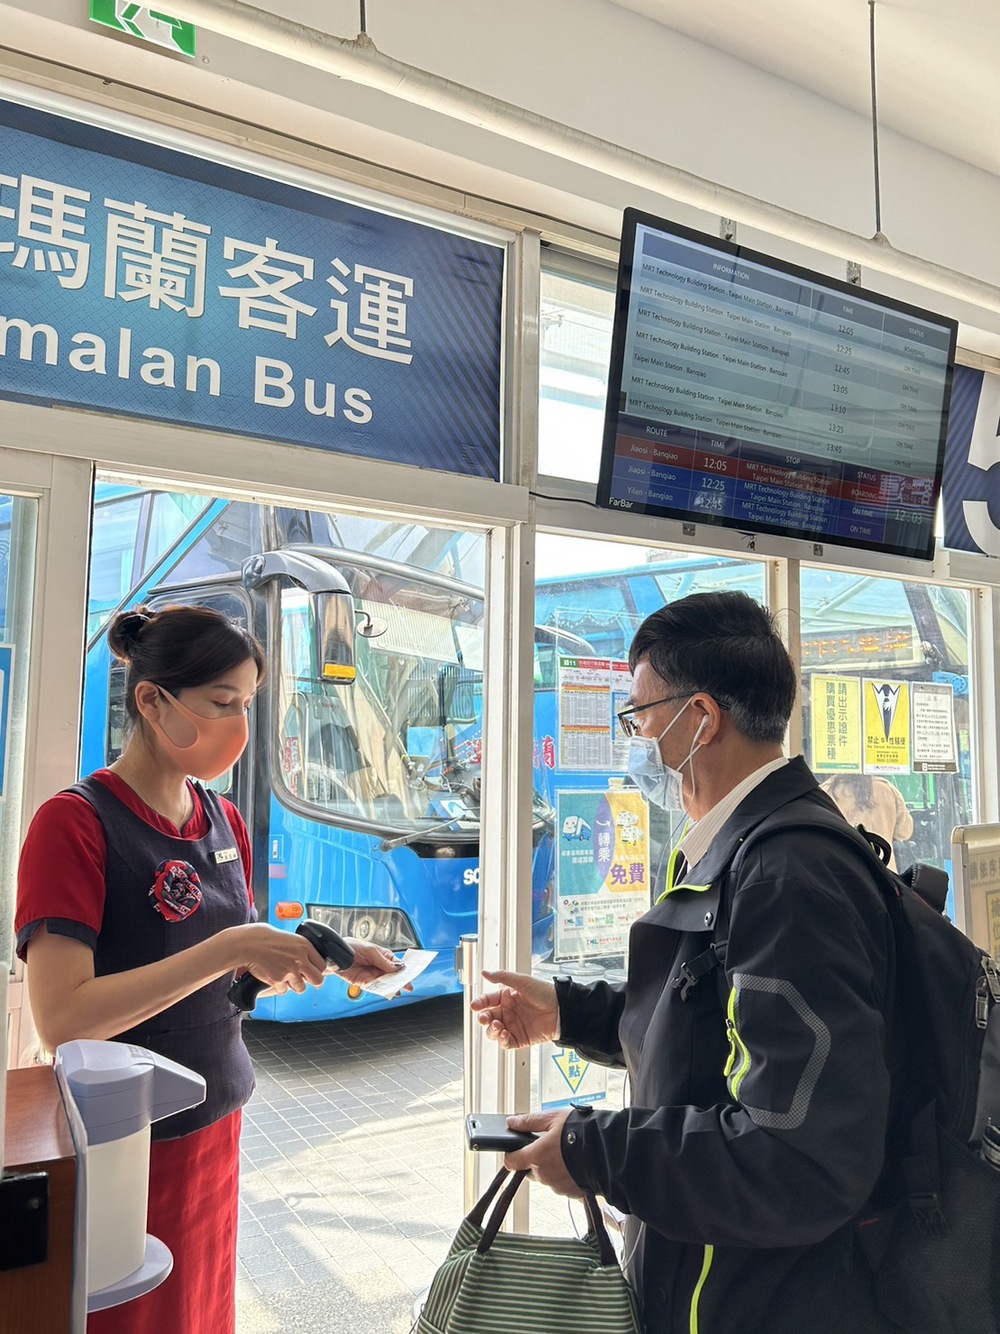 清明節連續假期 葛瑪蘭客運票價優惠最高81折起 - 台北郵報 | The Taipei Post